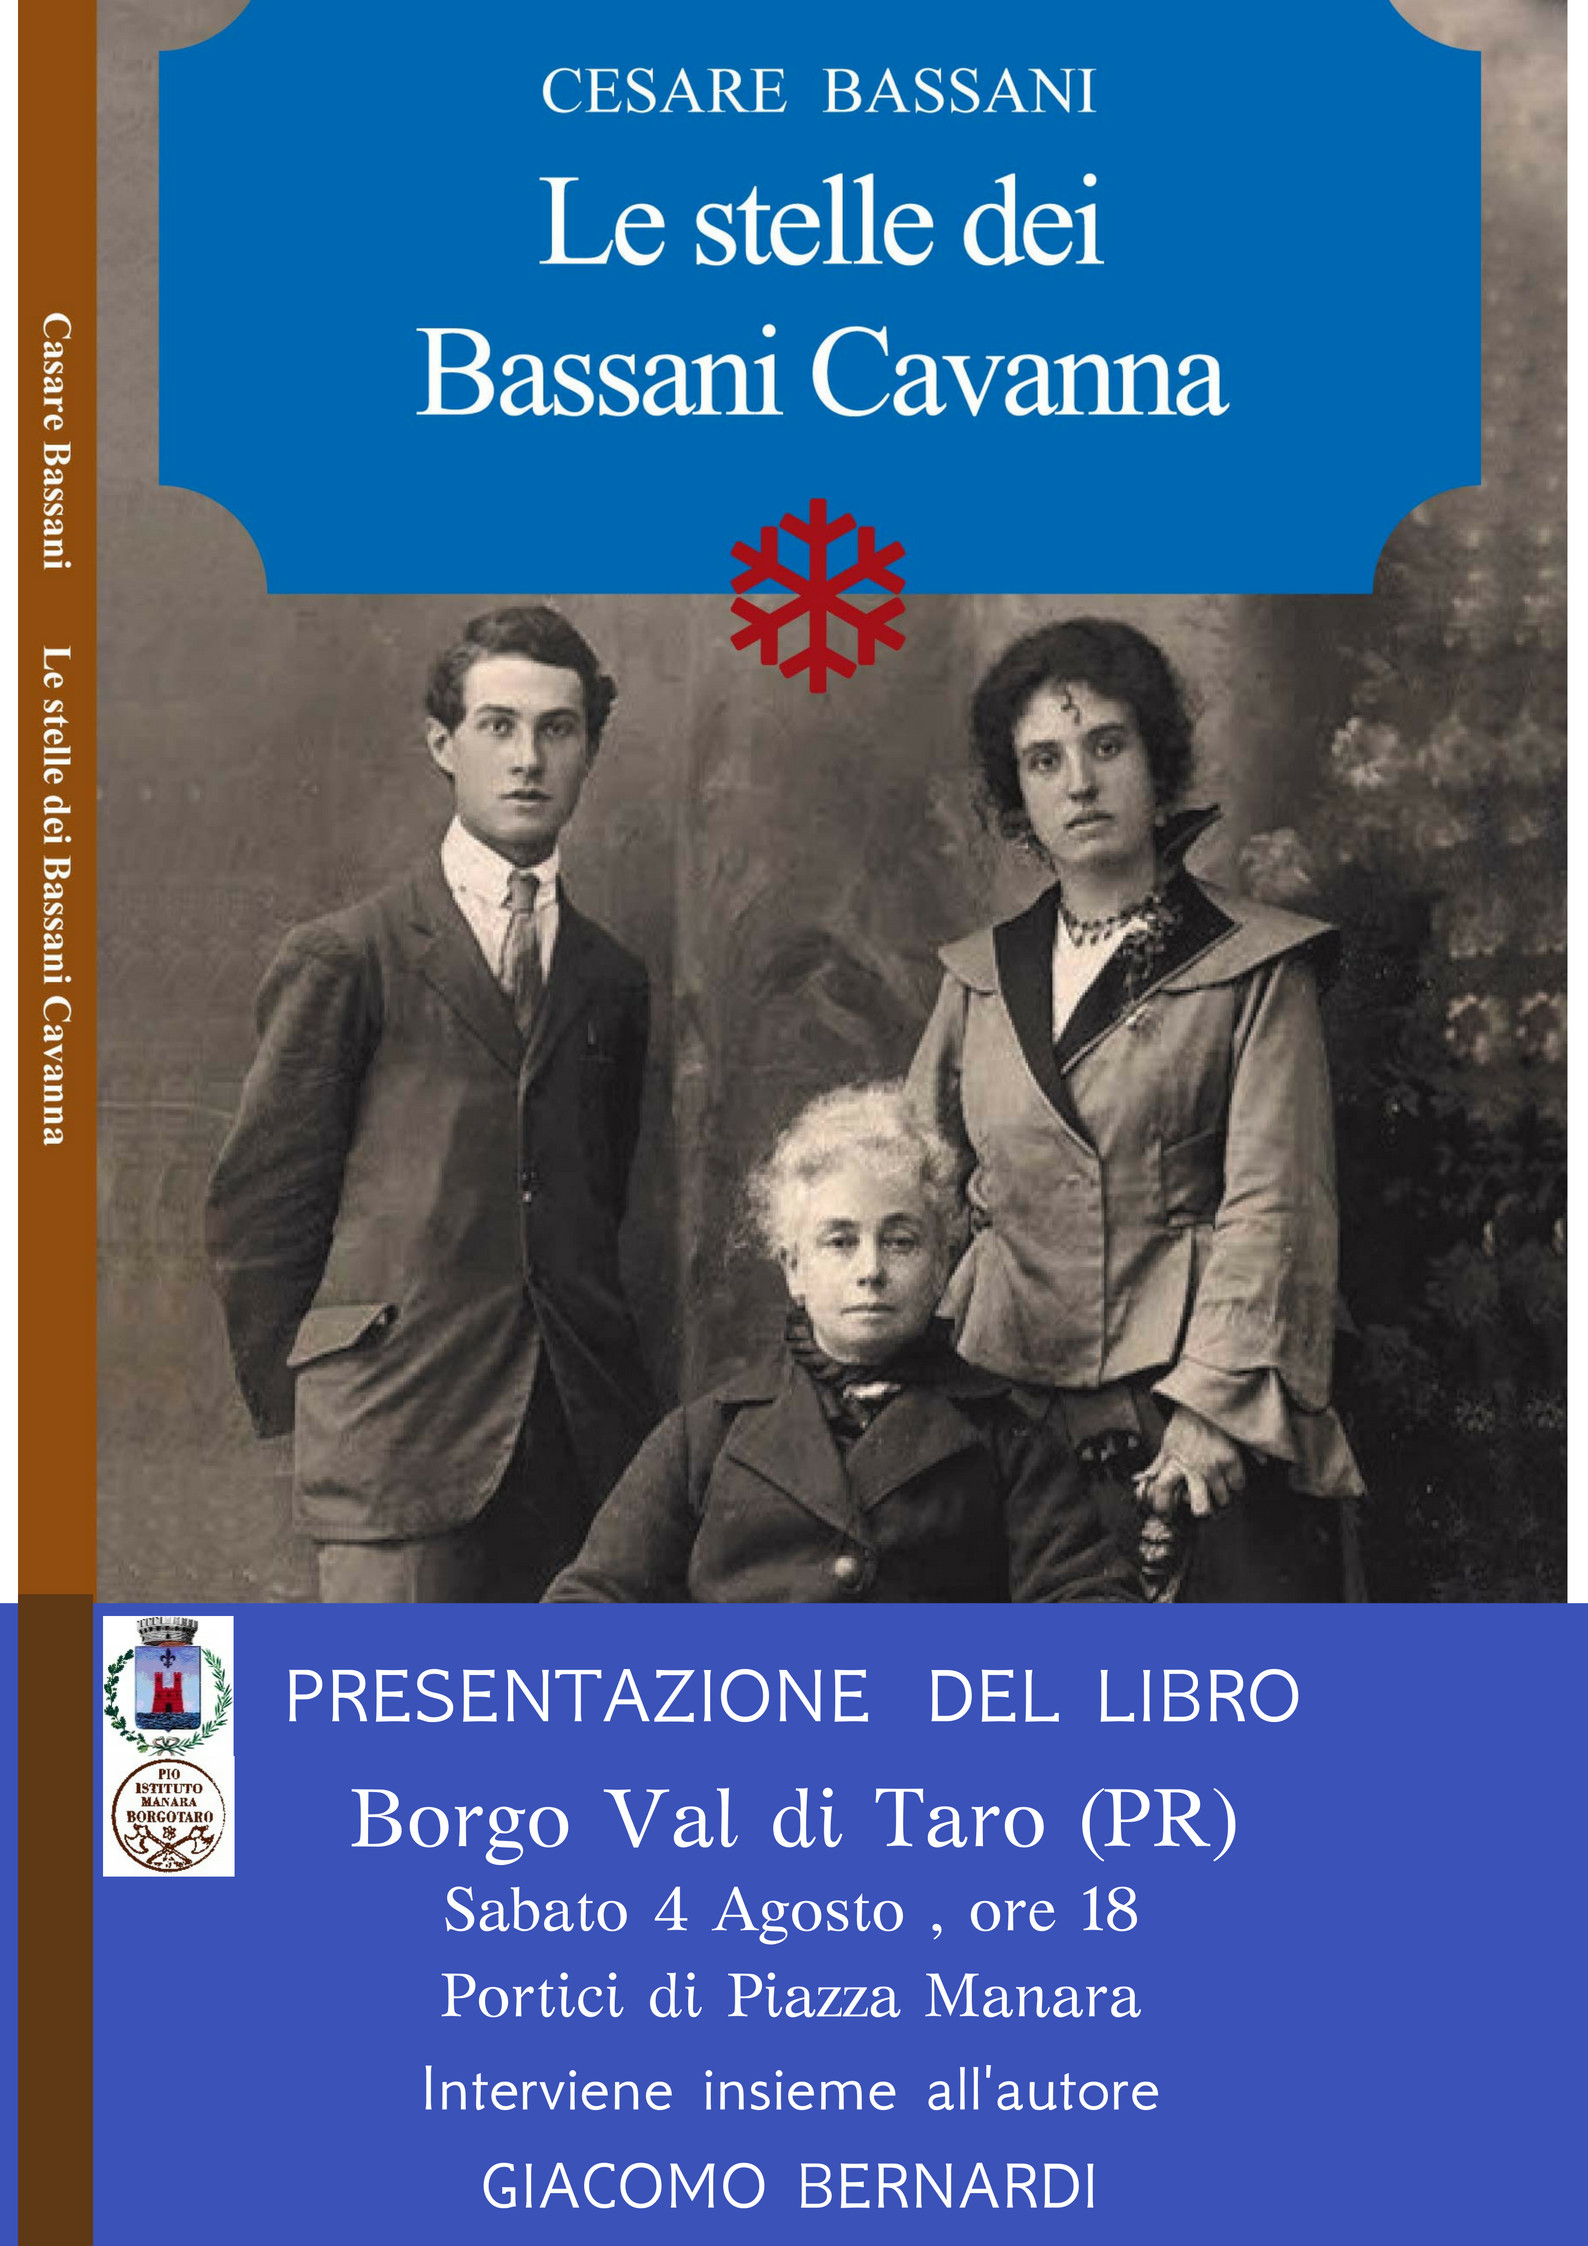 Le stelle dei Bassani Cavanna" - Presentazione del libro a Borgotaro